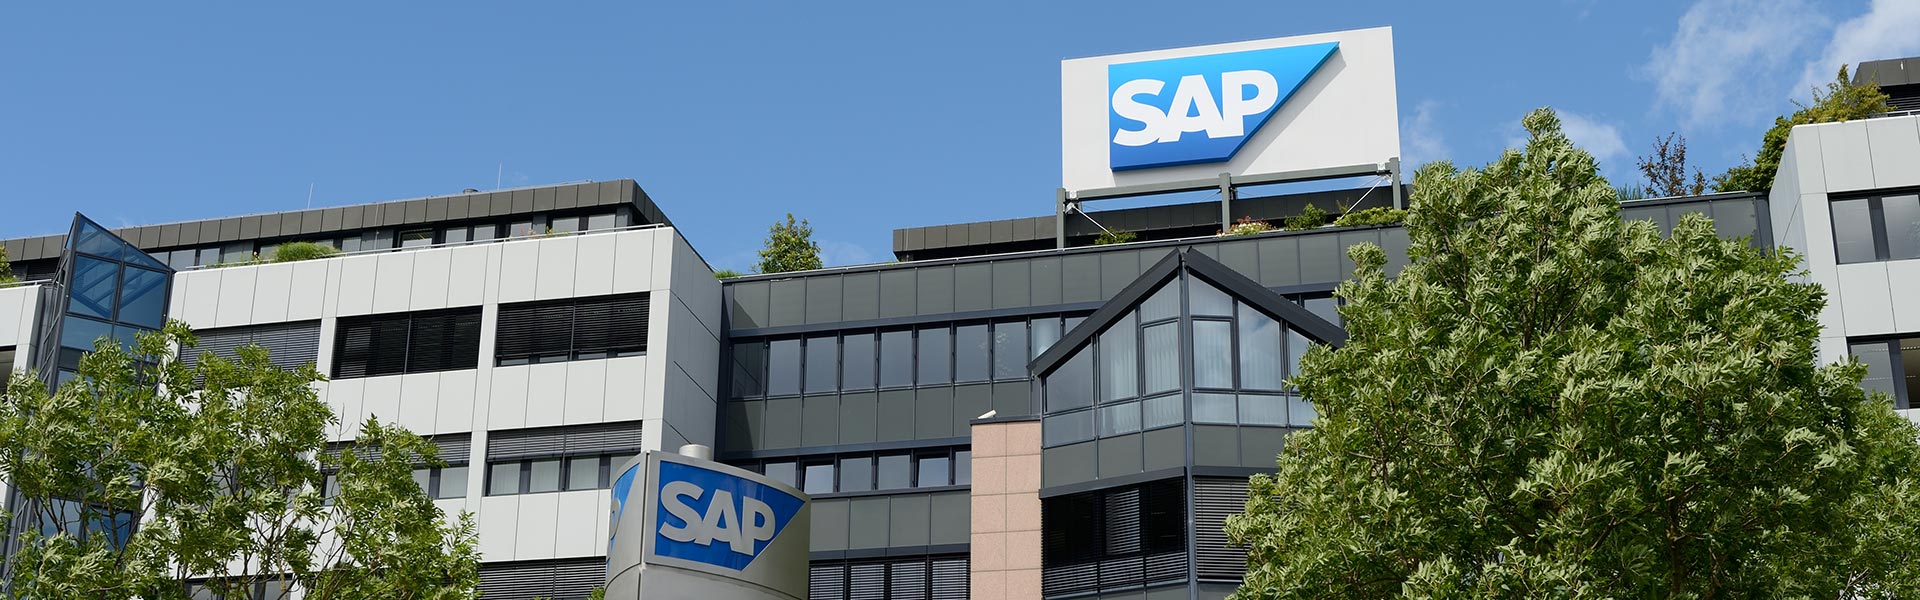 SAP e i suoi partner ampliano il portafoglio di soluzioni cloud per i settori retail, servizi professionali, macchinari e componenti industriali